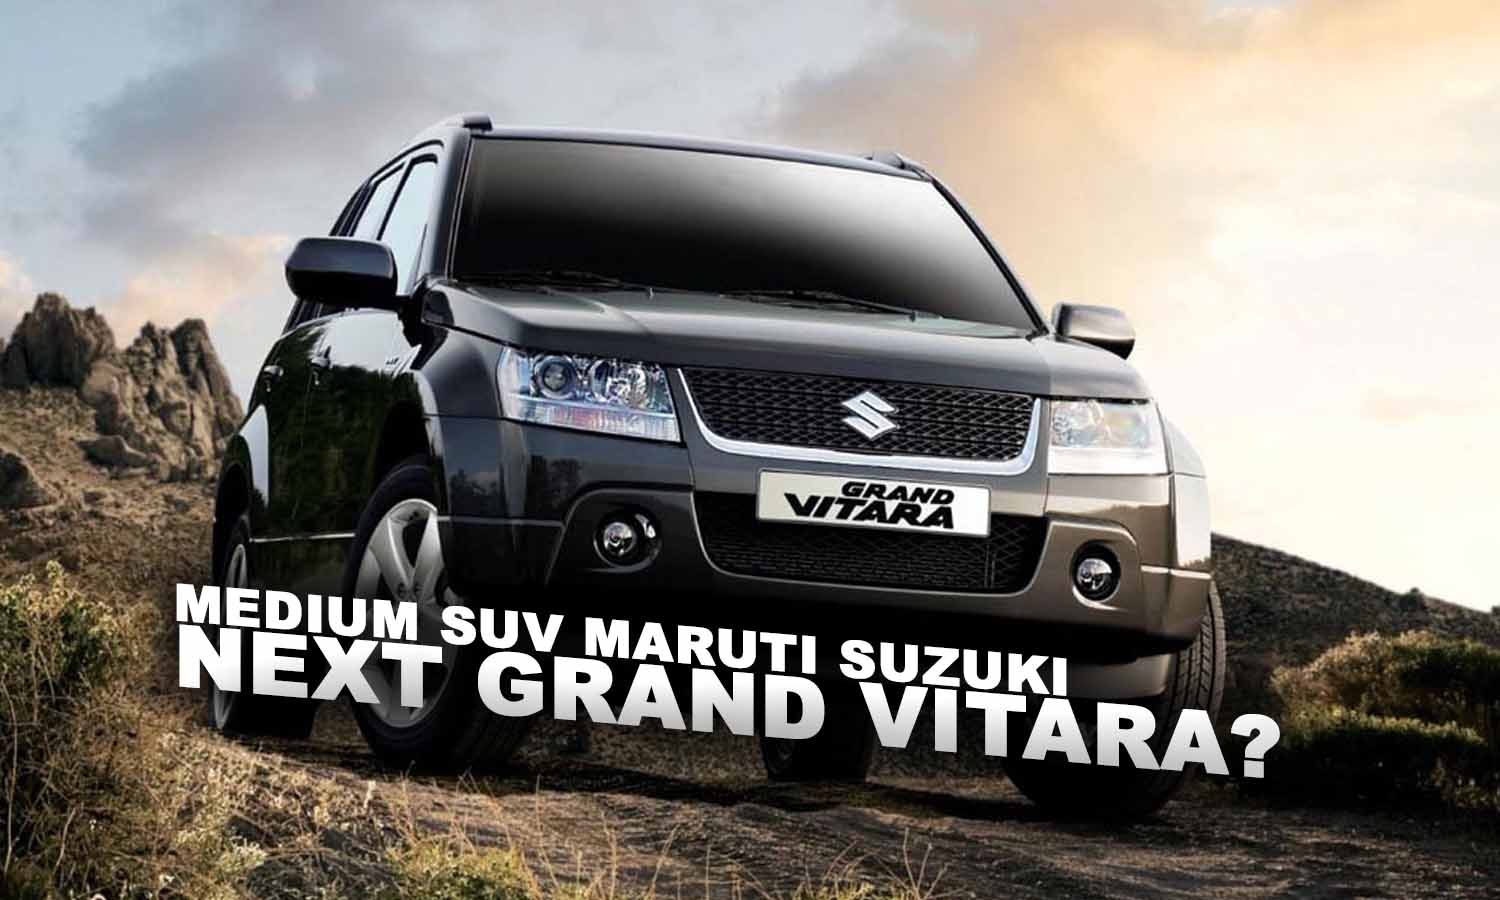 Berita, next grand vitara: Maruti Suzuki Menyiapkan SUV Baru Yang Lebih Besar